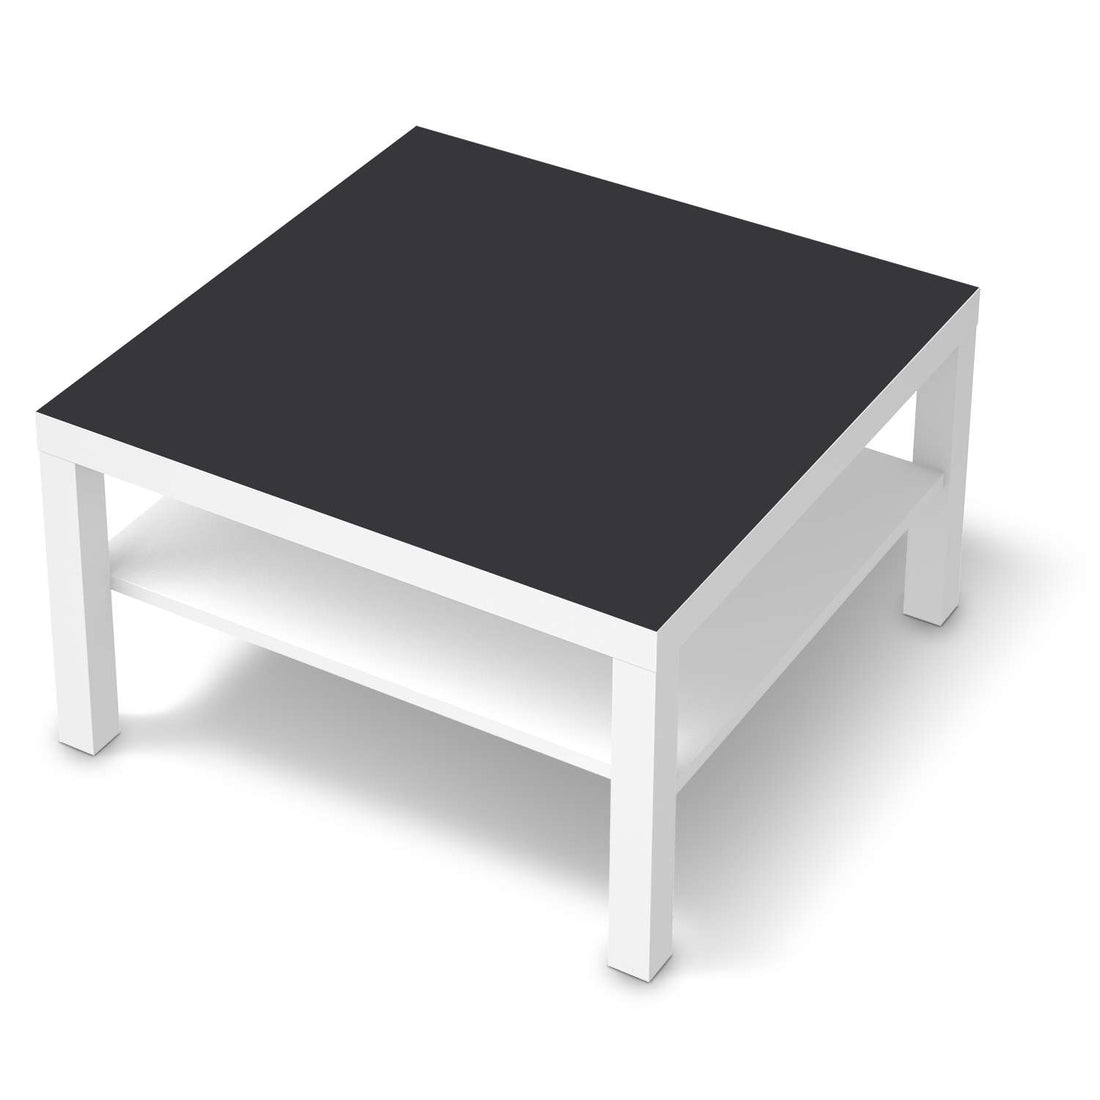 Selbstklebende Folie Grau Dark - IKEA Lack Tisch 78x78 cm - weiss